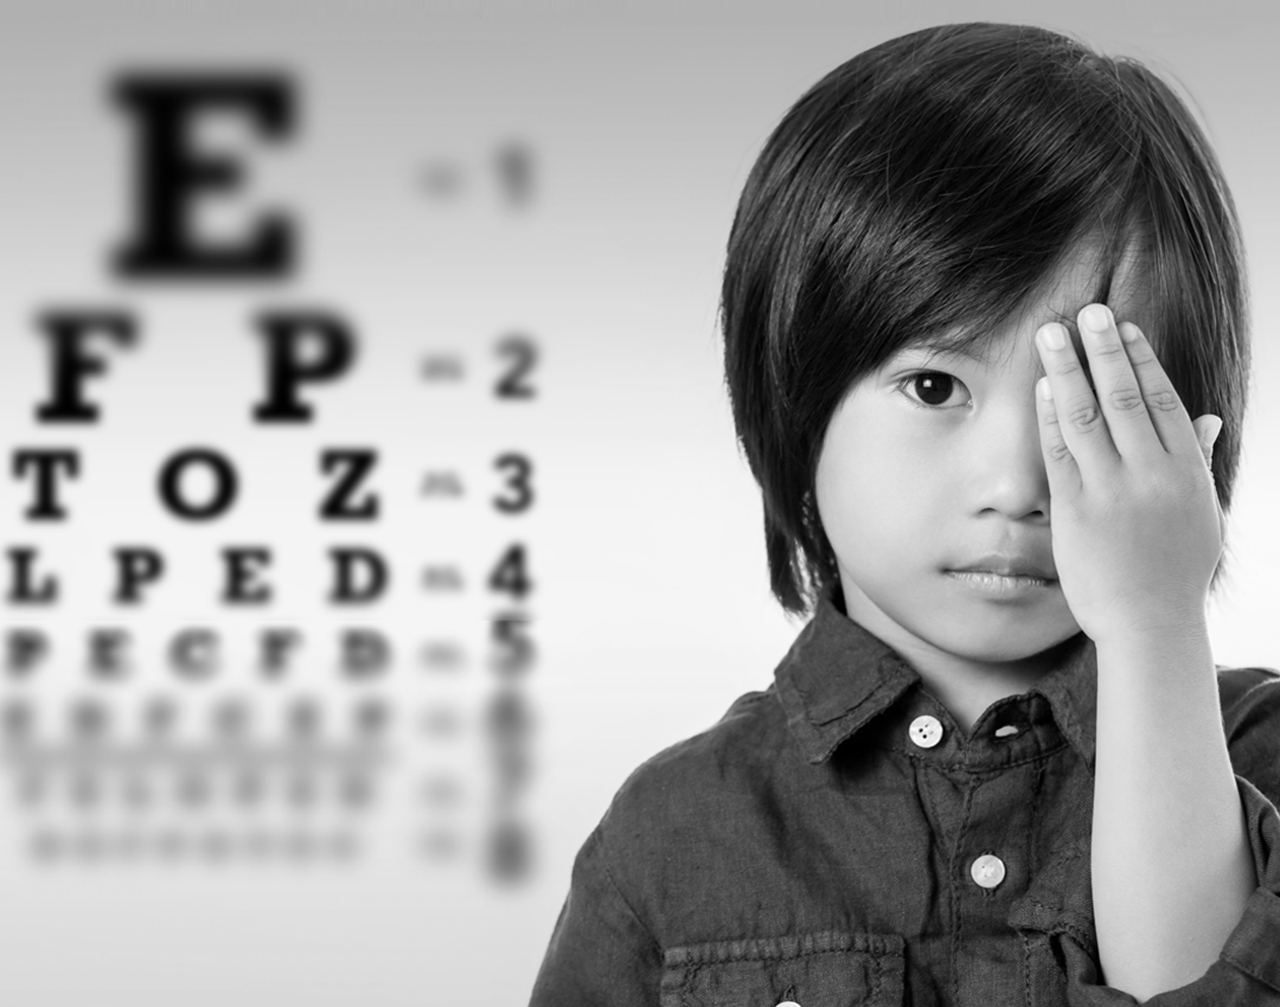 共同呵护好孩子的眼睛,让他们拥有一个光明的未来